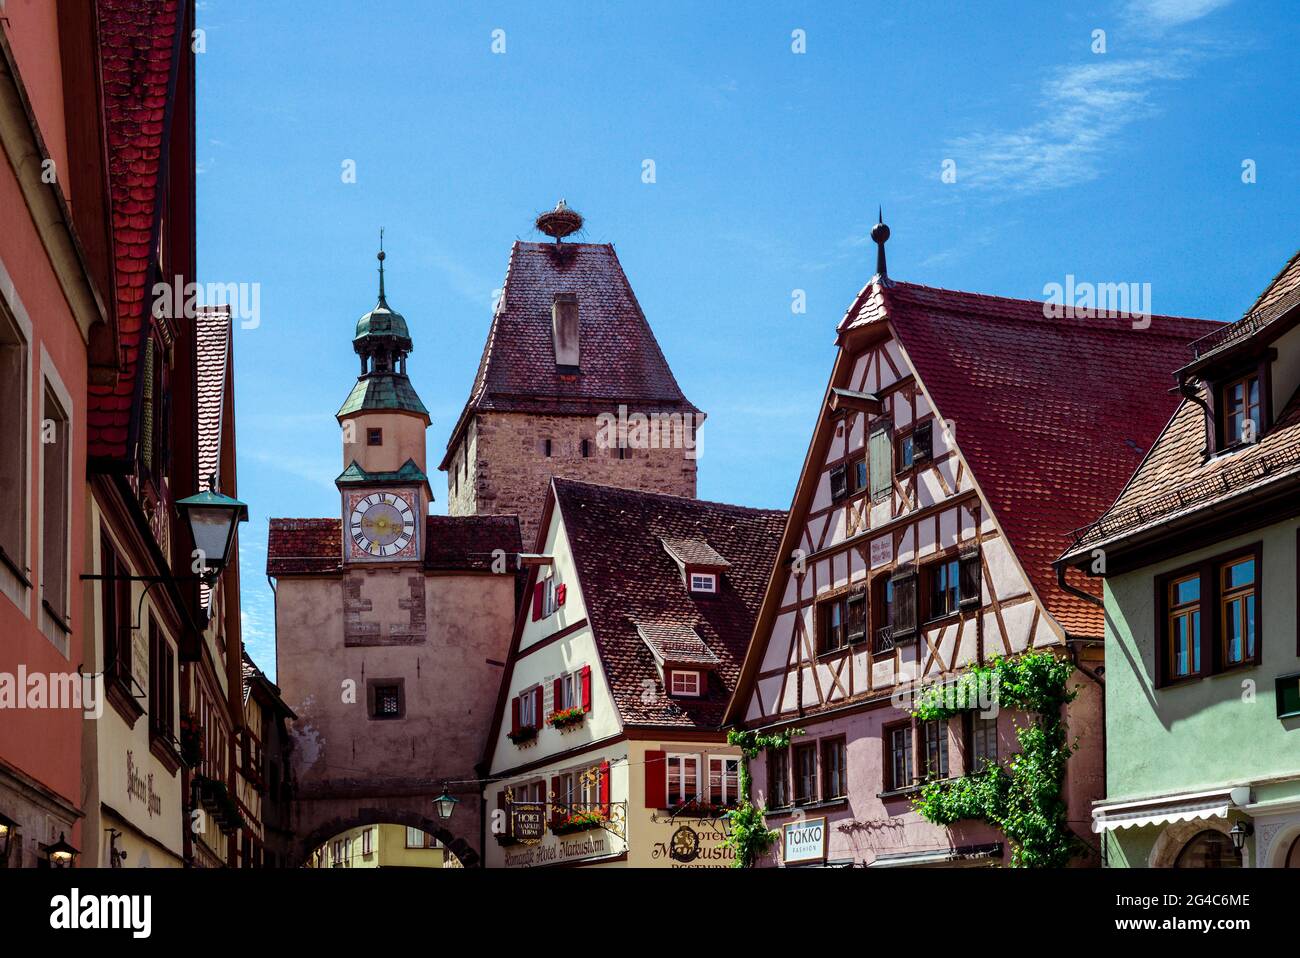 Rothenburg ob der Tauber, Franconia/Alemania: Röderbogen y Markusturm en el centro histórico Foto de stock